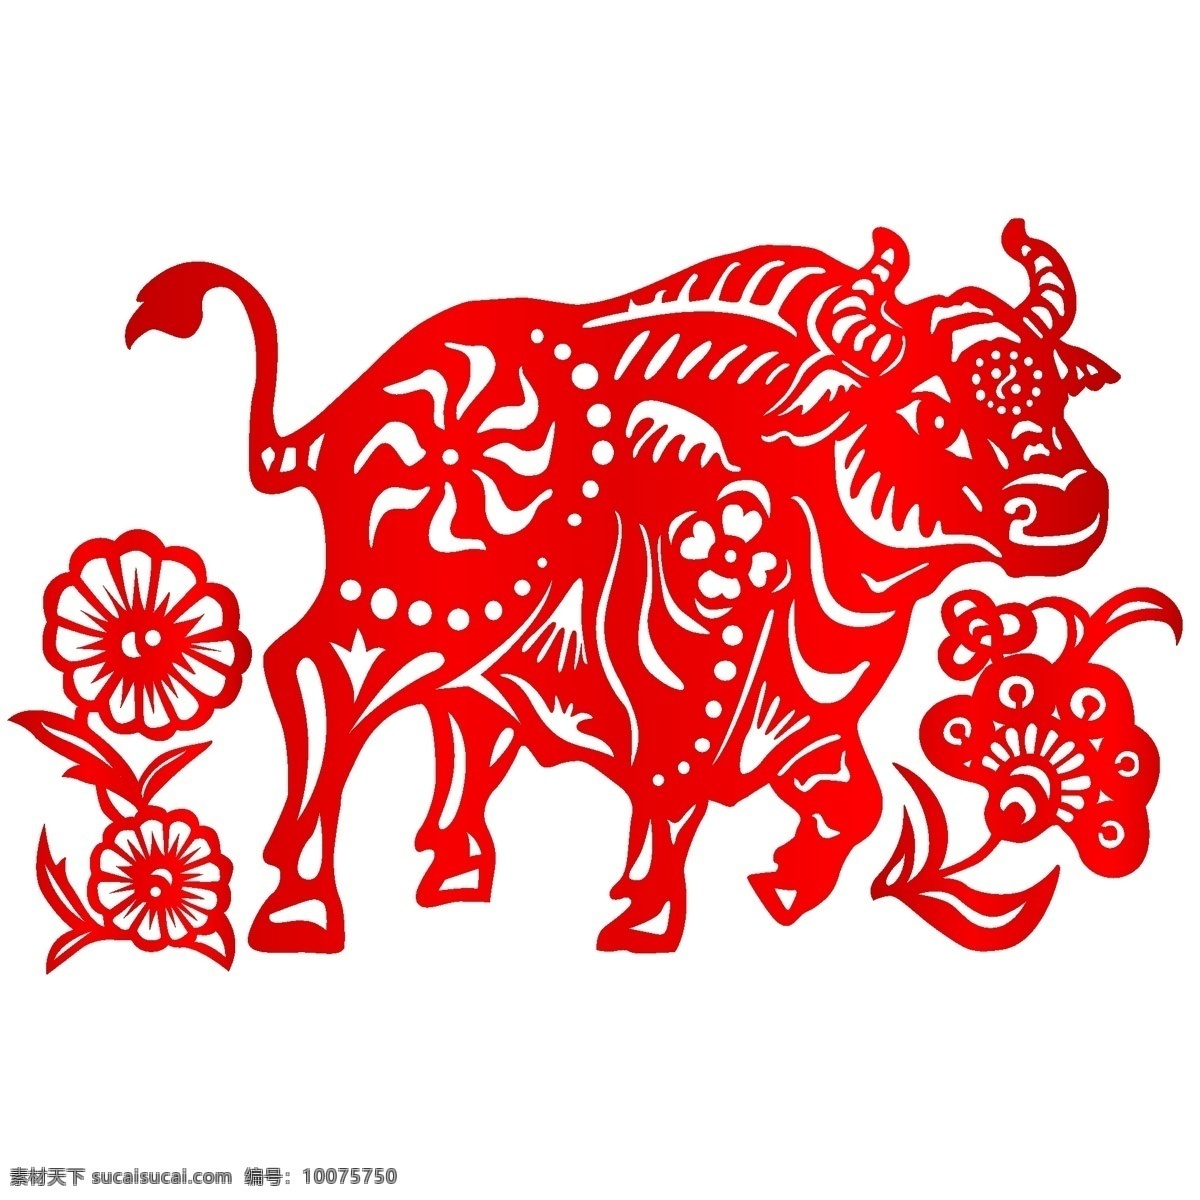 牛 中国 风 民族 生肖 剪纸 矢量图 牛年 精美红色 花边 12生肖 民族特色 中国元素 文化